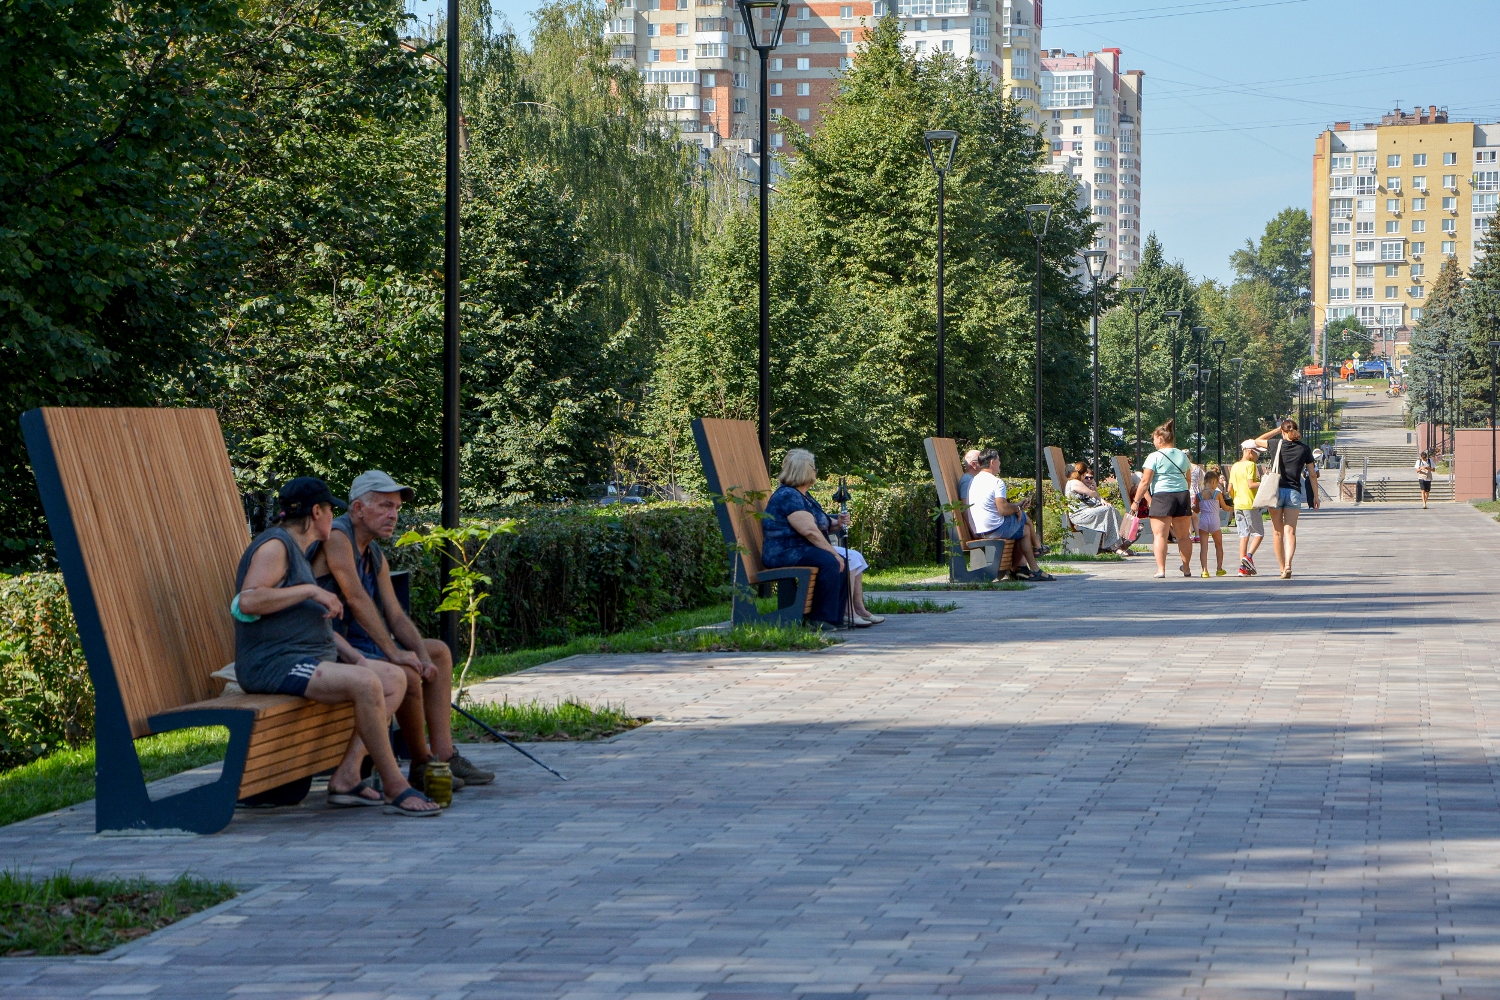 17 общественных пространств благоустроили в Нижнем Новгороде с начала года